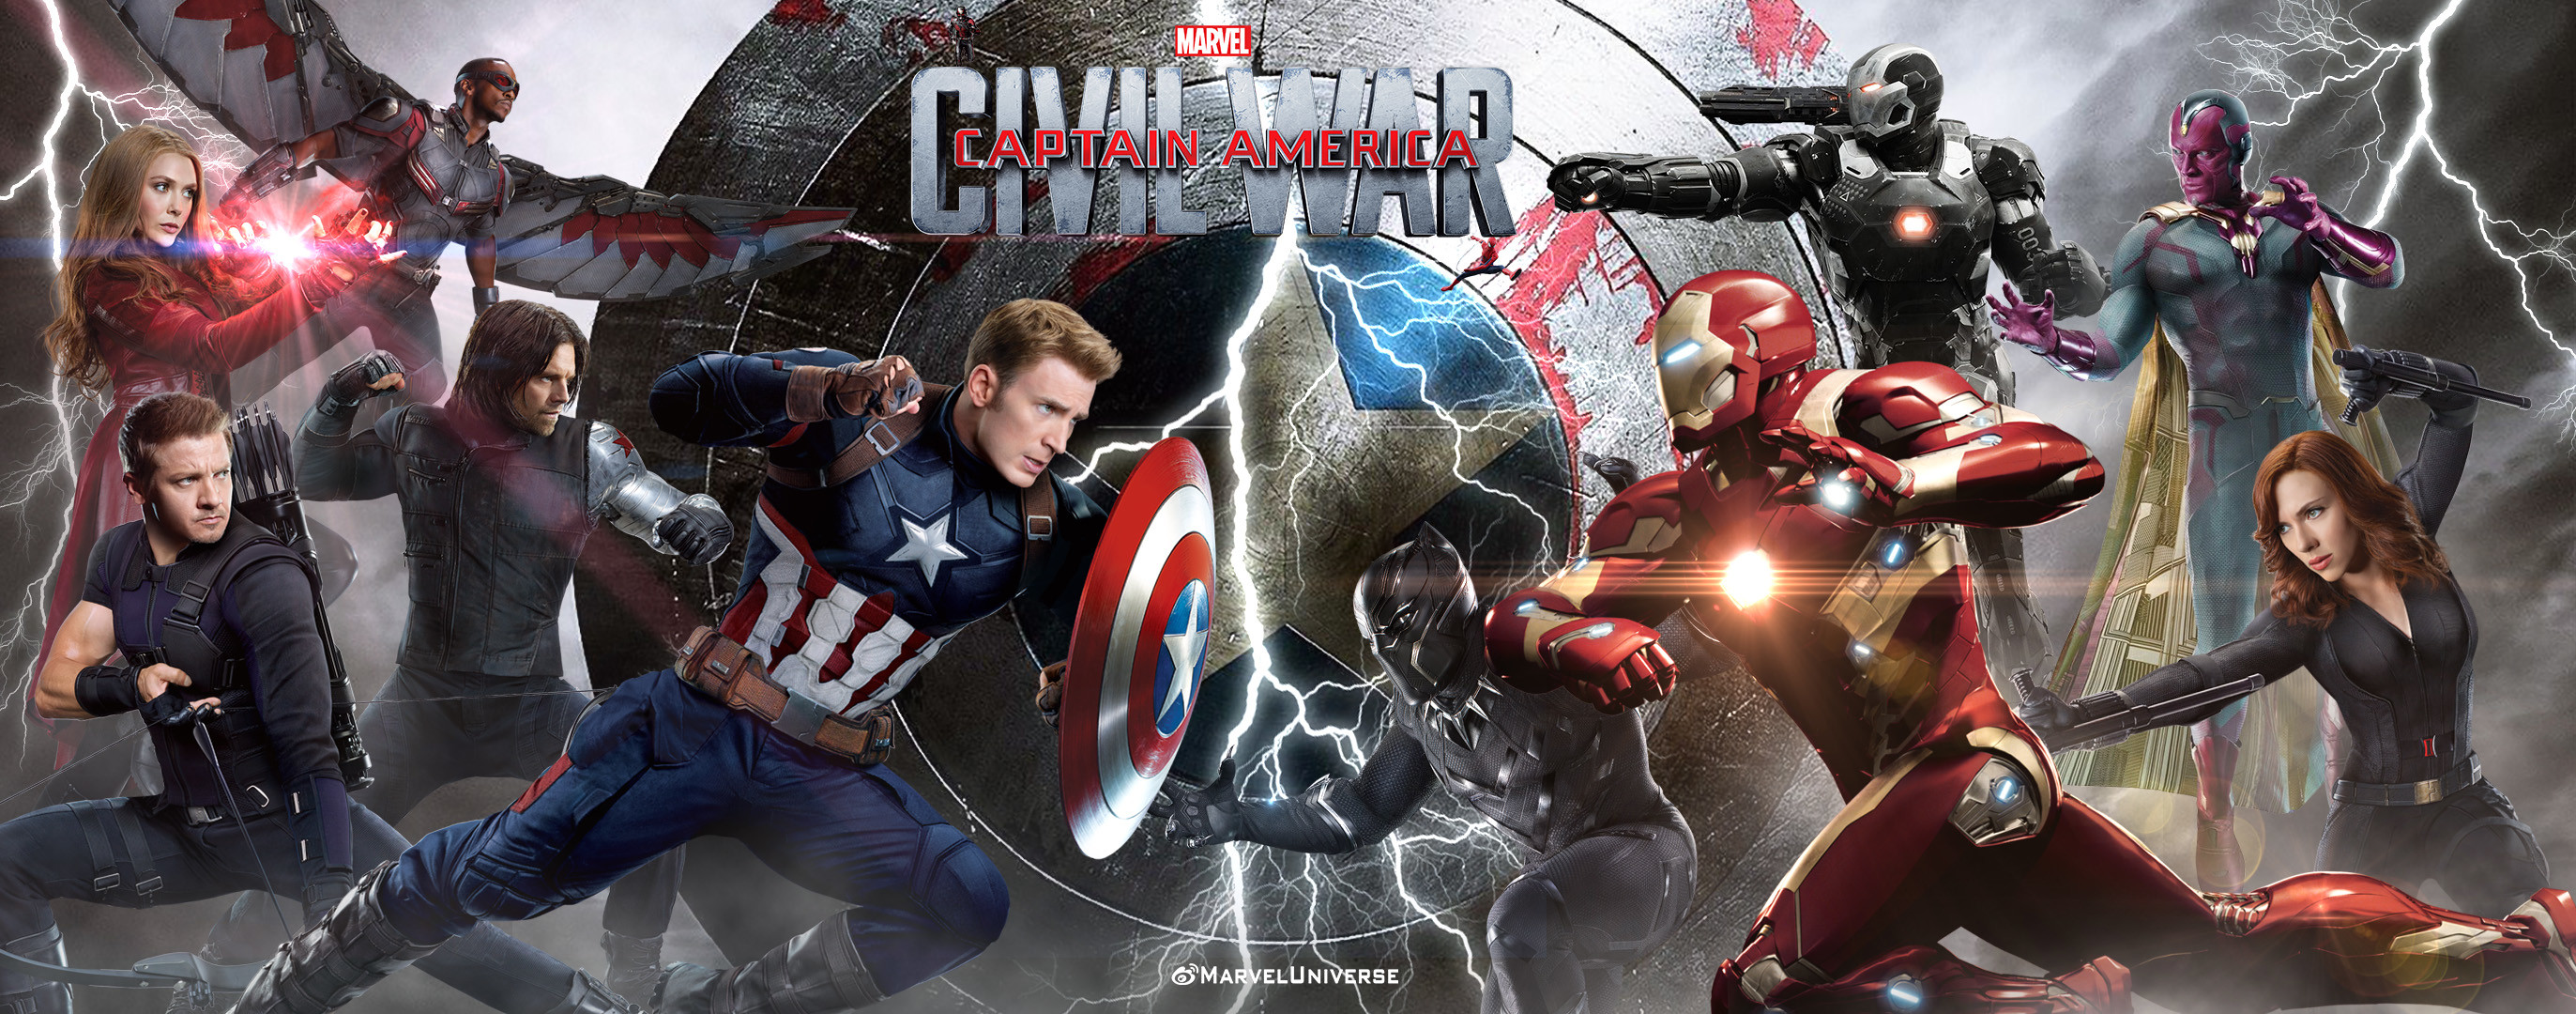 2745x1080 Captain America Civil War Wallpapers Desktop